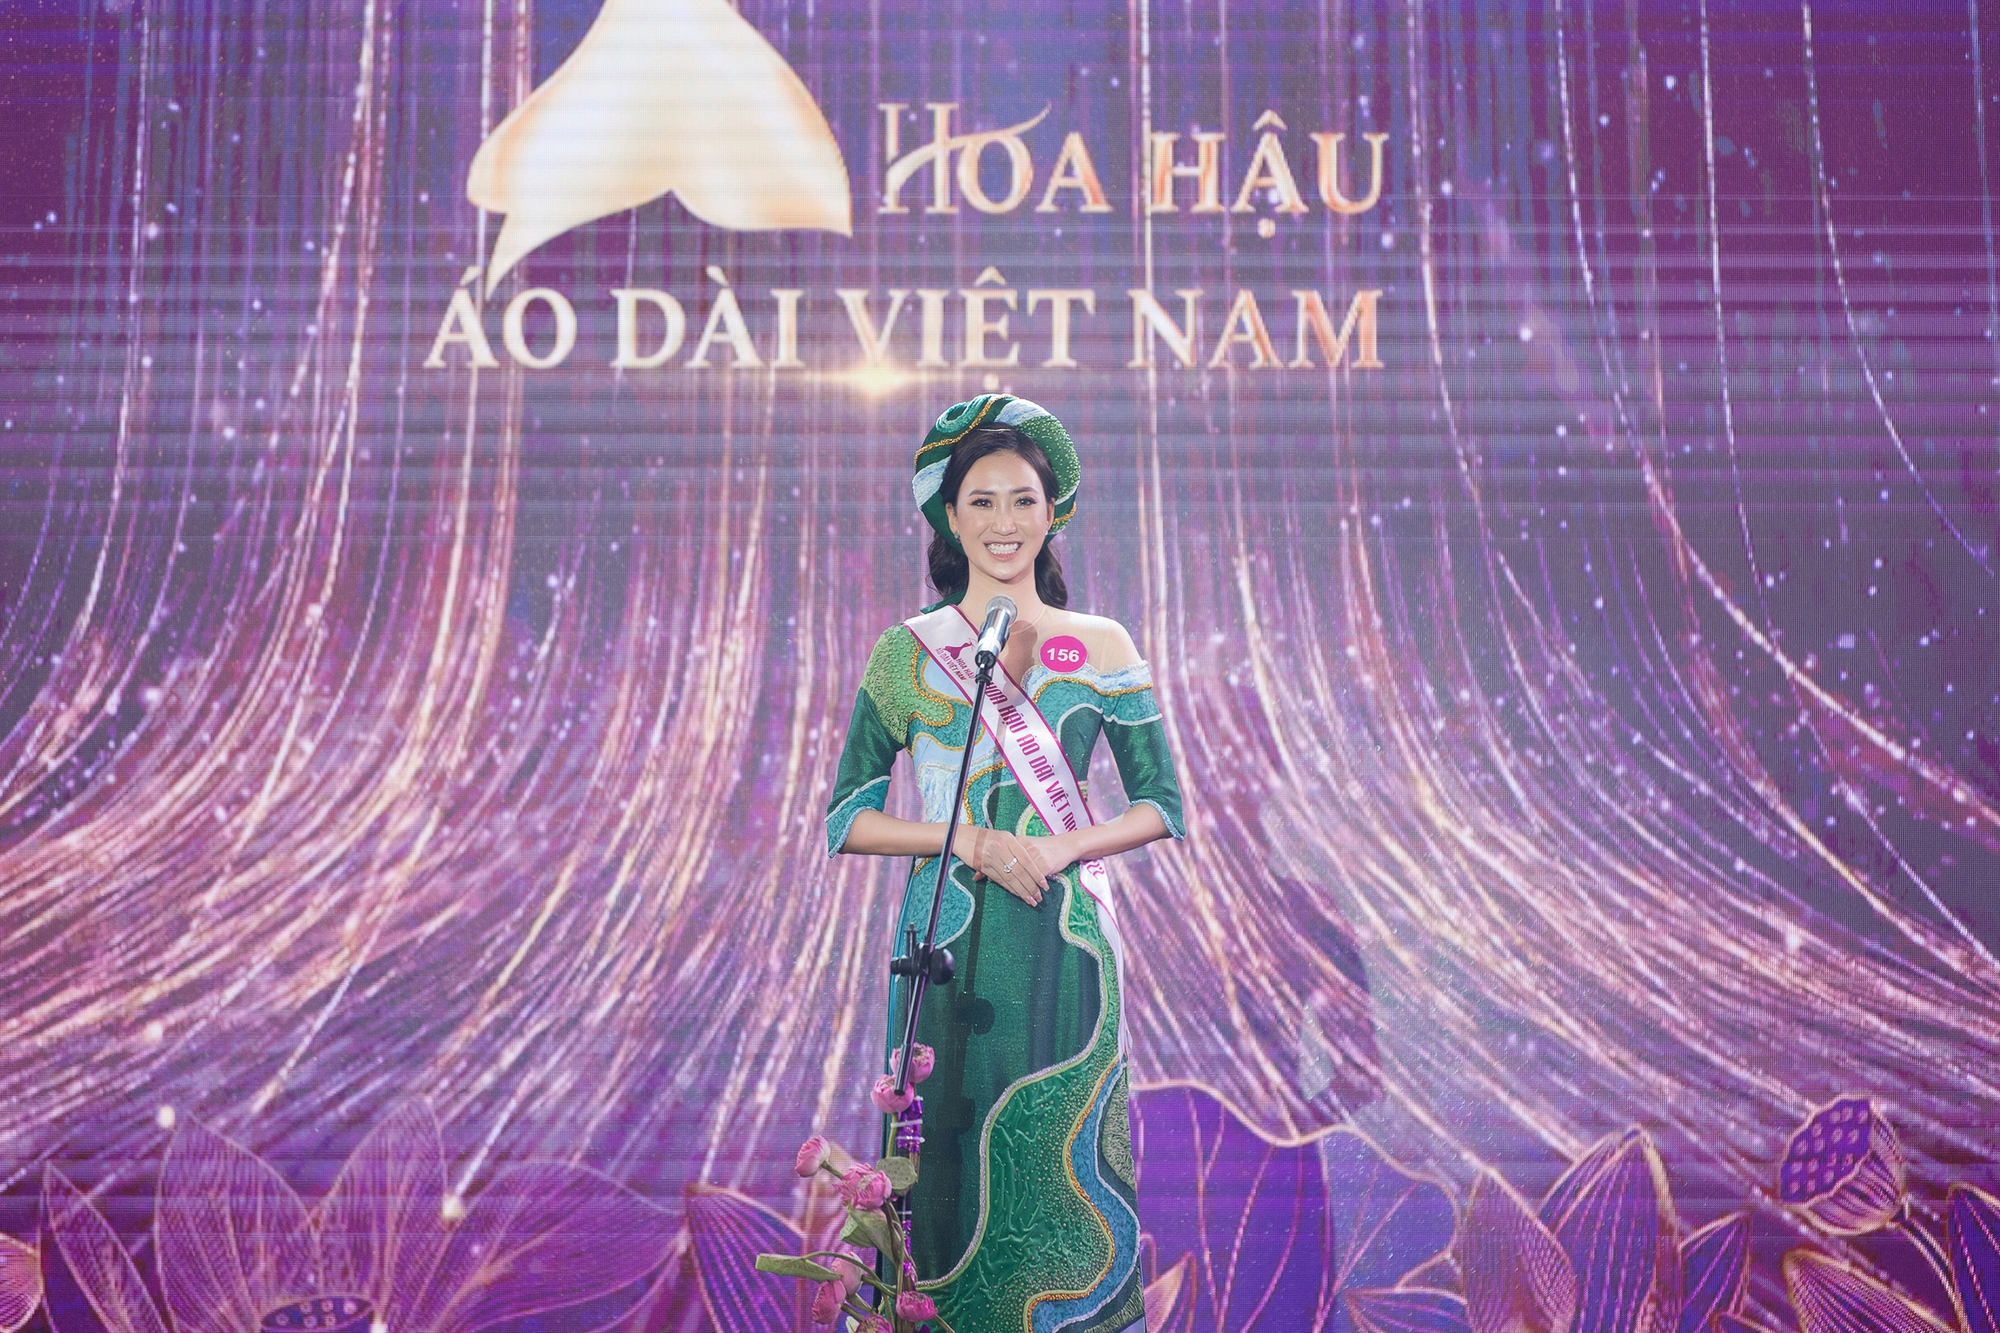 Người đẹp Tuyên Quang bật khóc khi nhận vương miện Hoa hậu Áo dài Việt Nam 2022 giá trị 3,2 tỷ đồng - Ảnh 3.